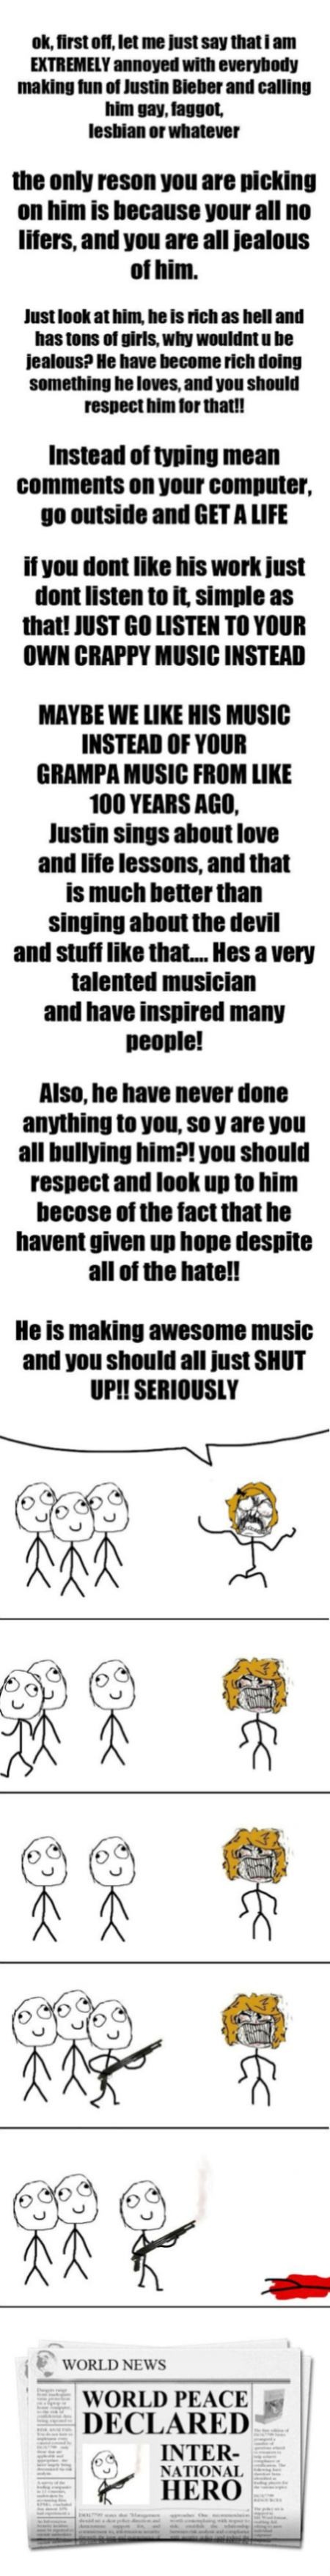 Obrázek Hating on Justin Bieber 15-01-2012